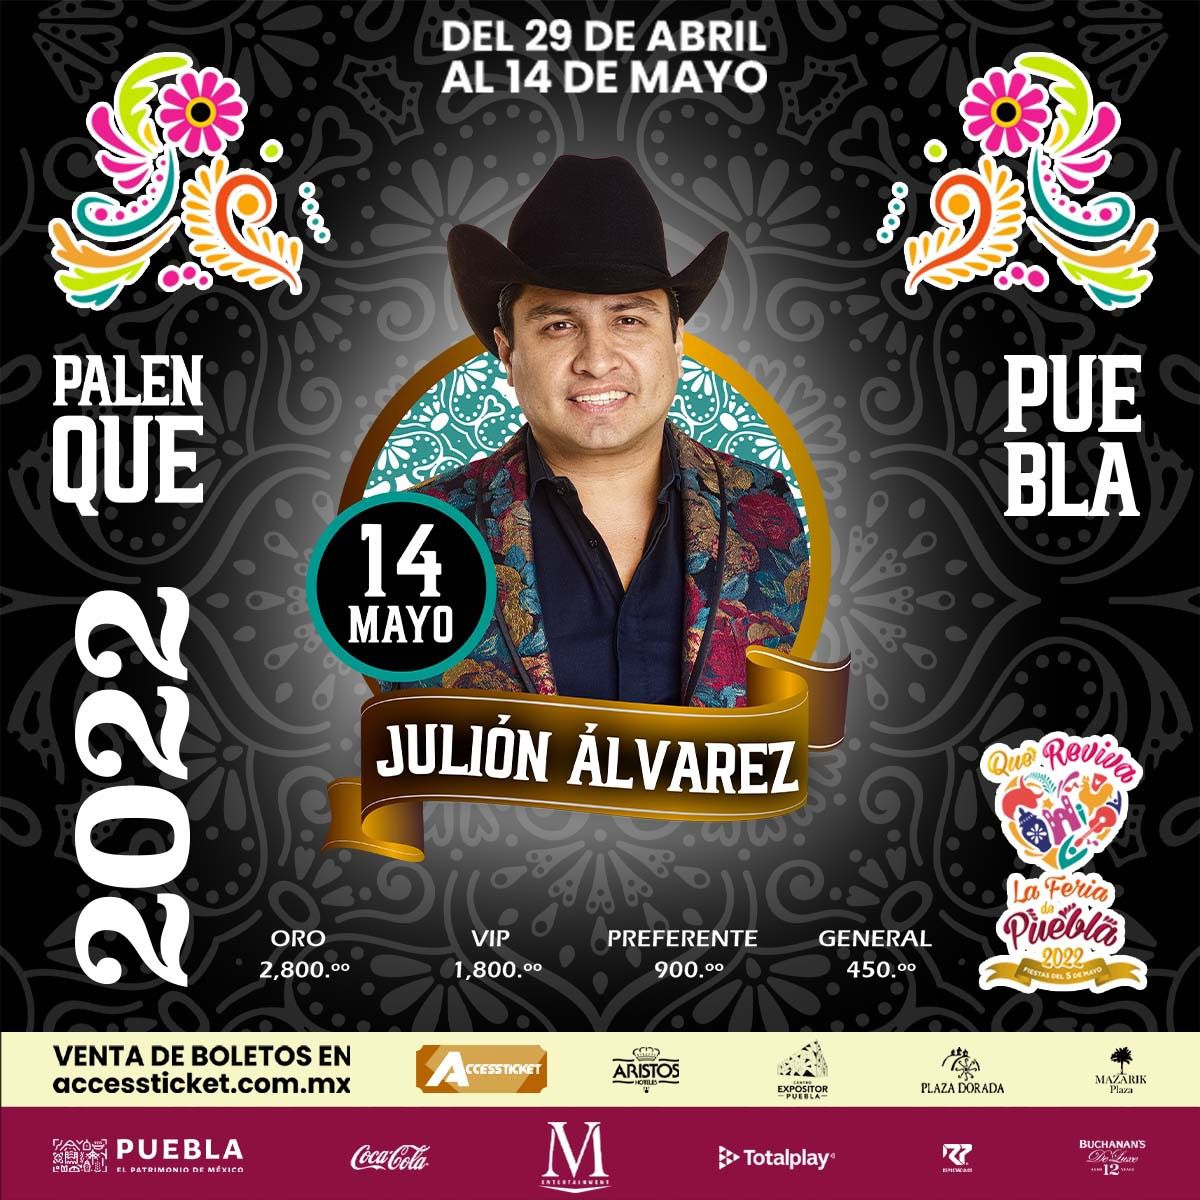 Julión Álvarez, Palenque de Puebla, sábado, 14 de mayo de 2022 a las 11